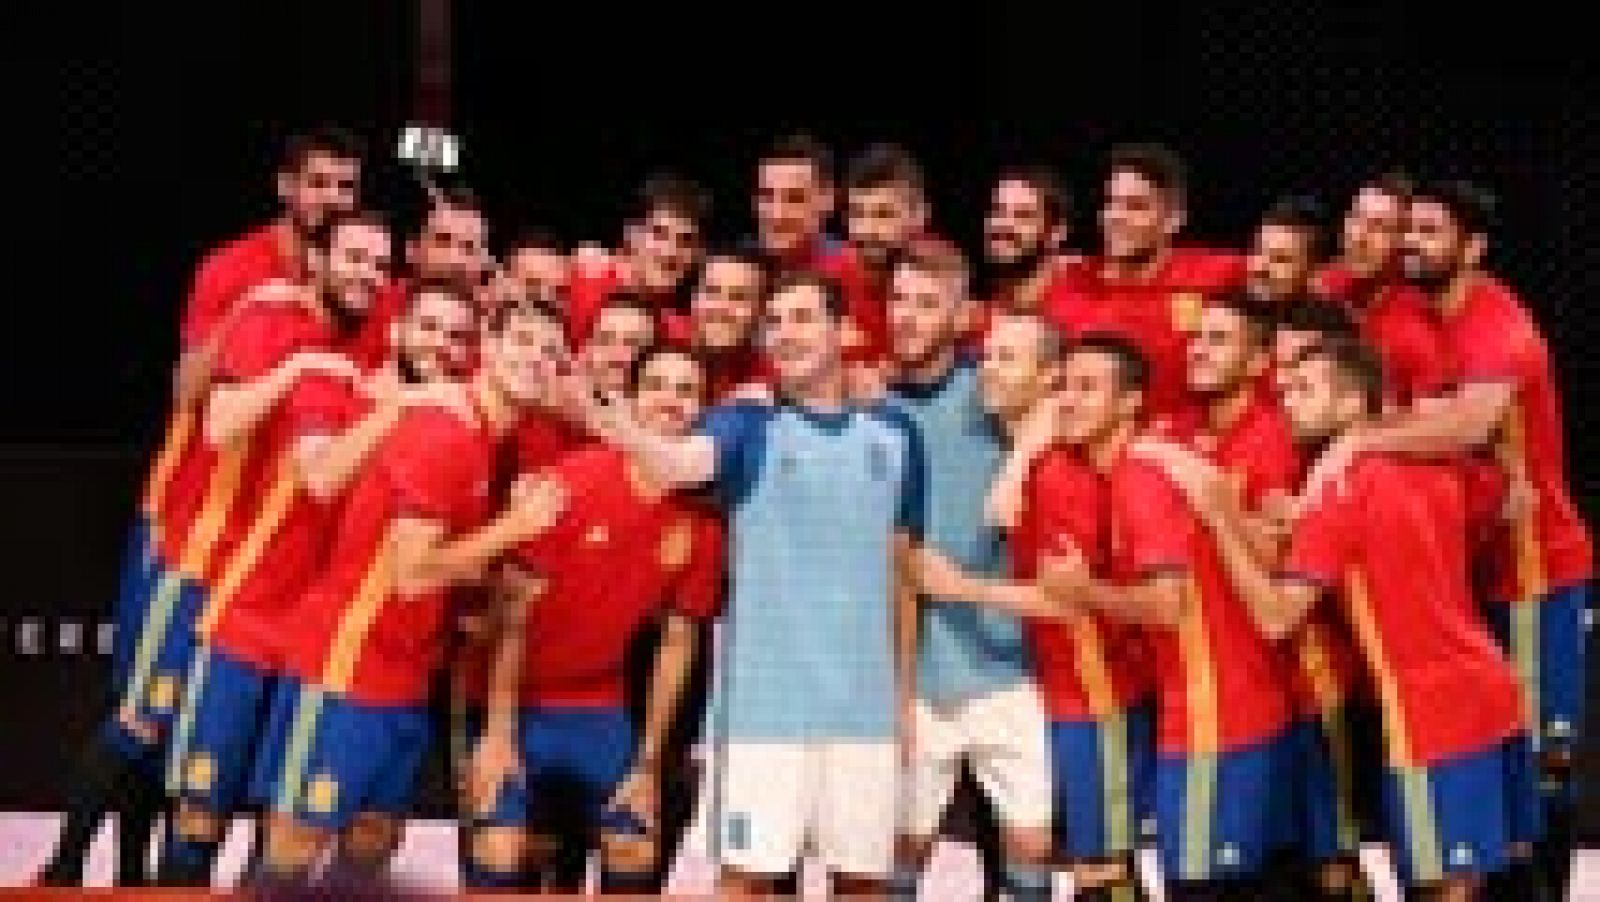 El capitán de la selección española, Iker Casillas, señaló este martes que el combinado nacional "siempre es aspirante al título" de cara a la Eurocopa que se disputará el próximo verano 2016 en Francia, y añadió que La Roja seguramente sea "una de las favoritas de la Euro".